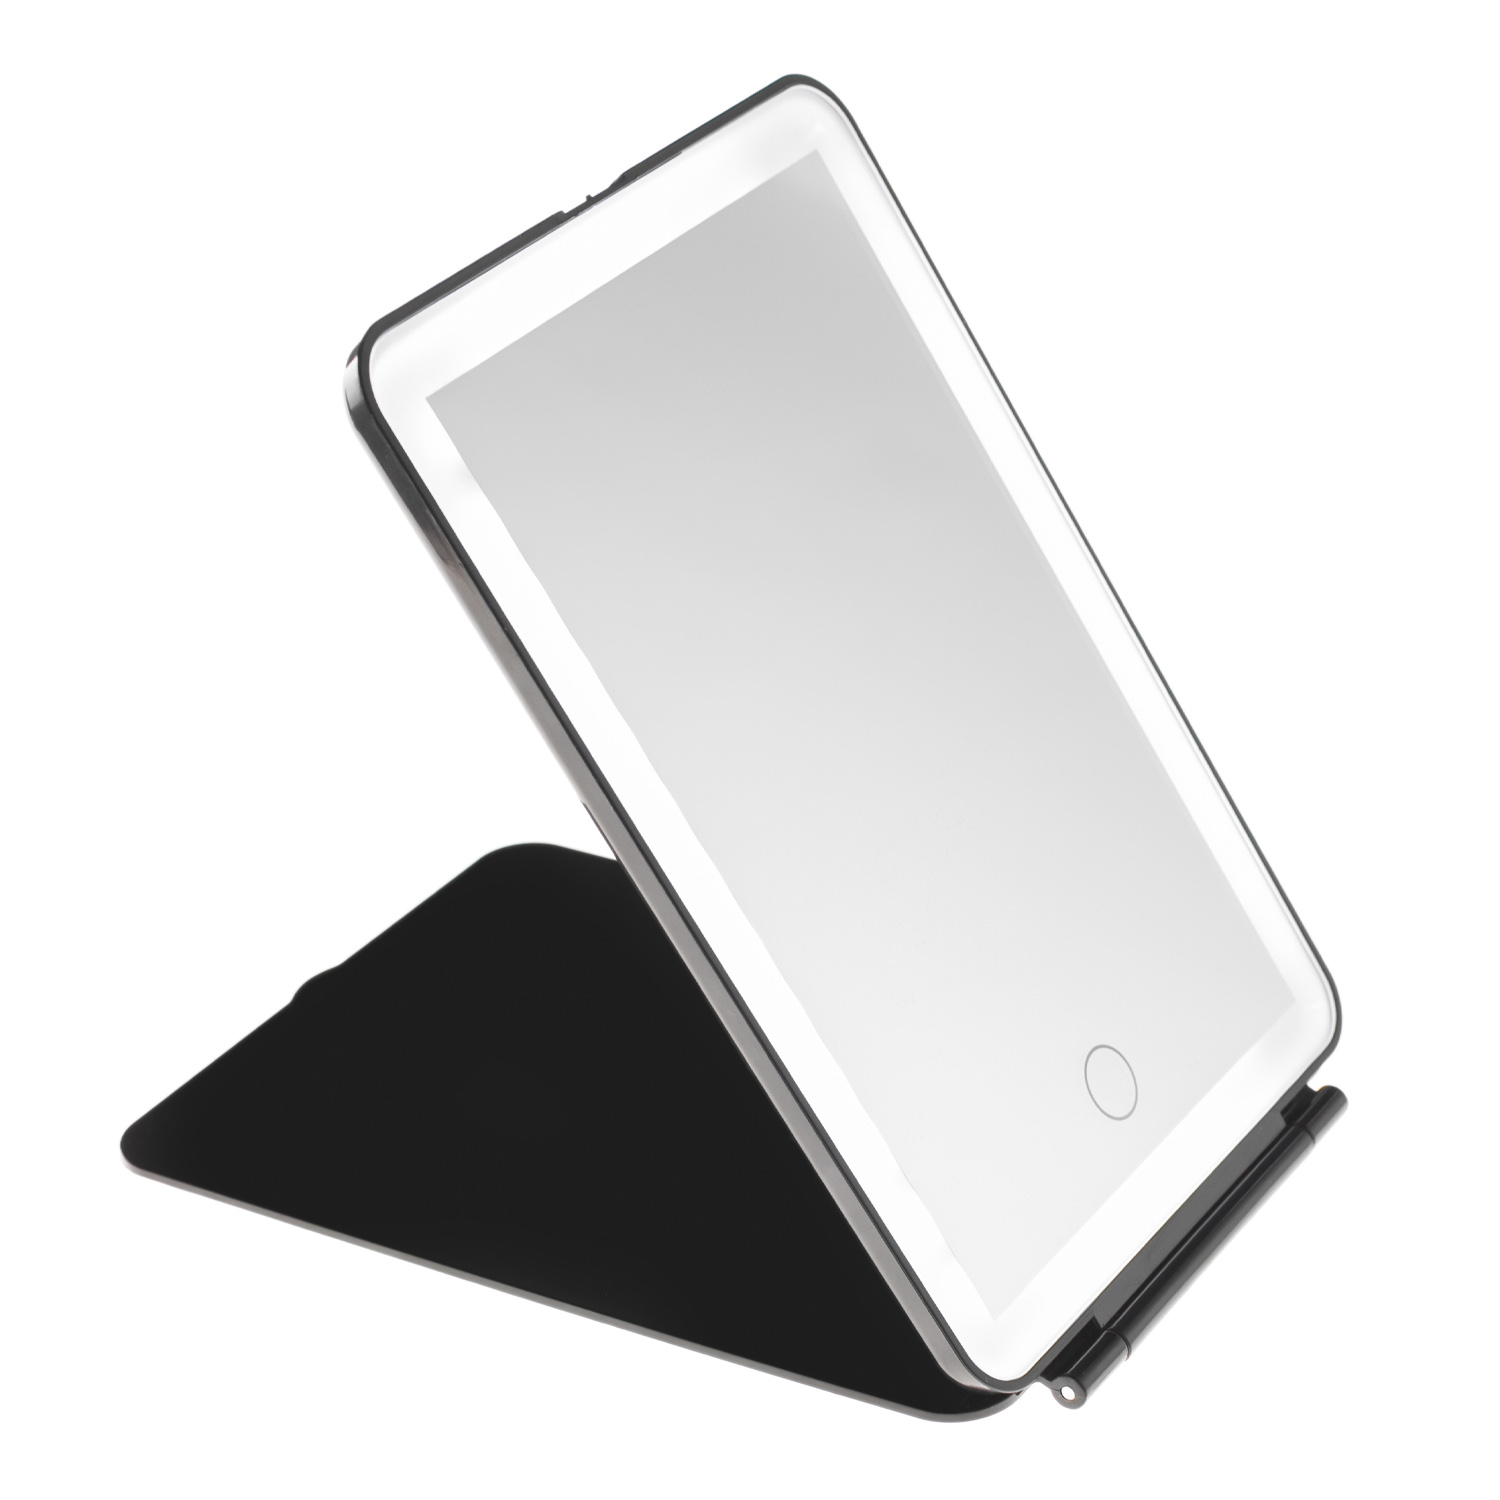 Зеркало косметическое CleverCare в форме планшета с LED подсветкой монохром цвет черный - фото 2